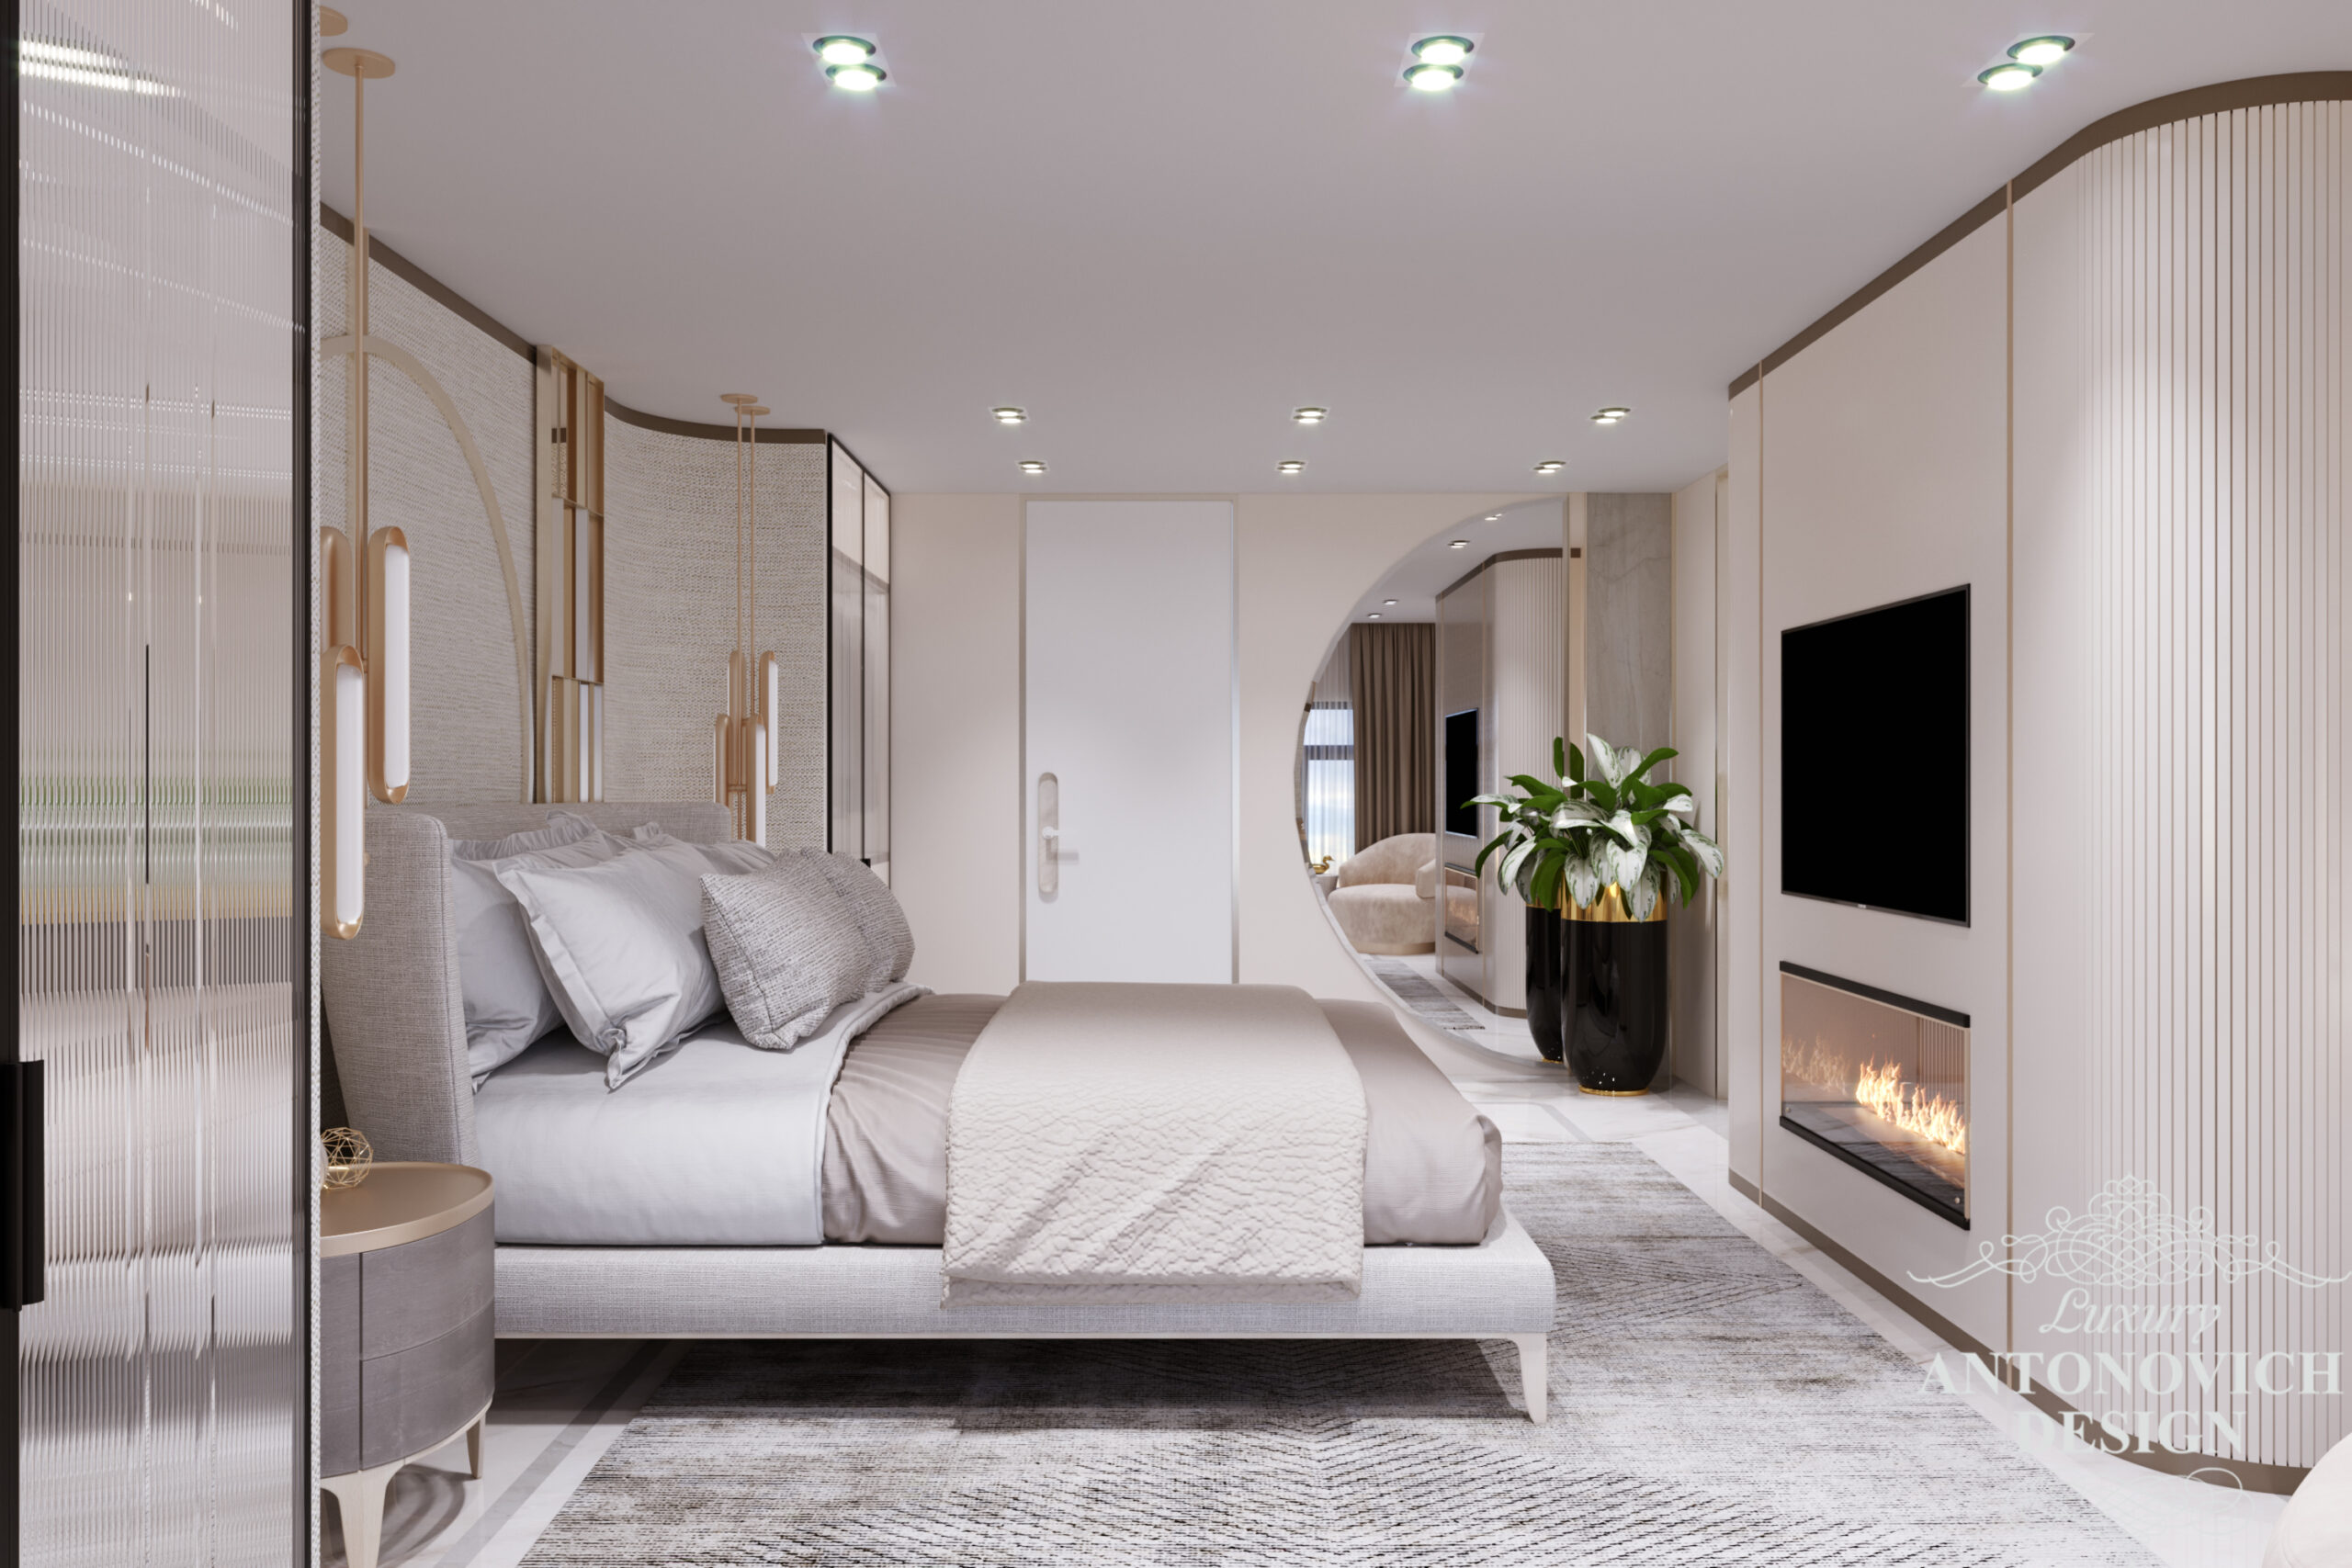 Сучасний дизайн спальні в світлій лаконічною палітрі. камін в інтер'єрі спальні господарів в проекті приватного будинку